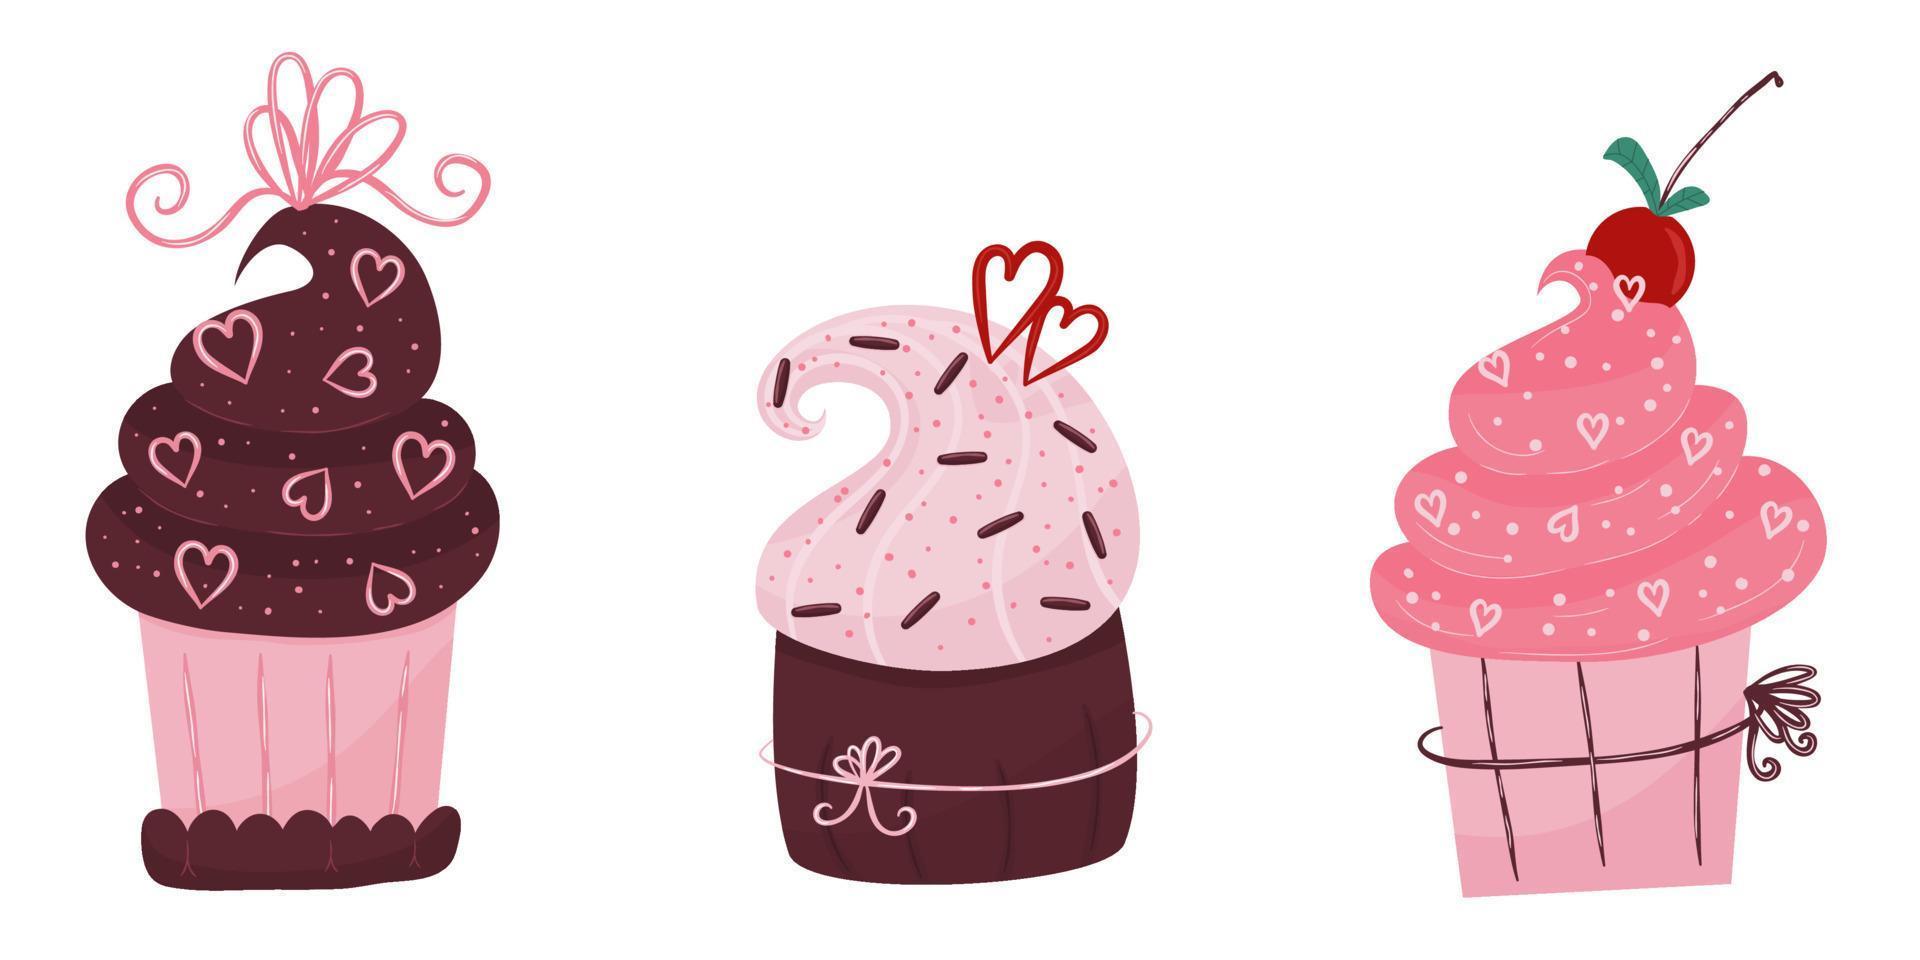 Valentinstag Kuchen. eine Reihe von Muffins mit Schokolade und Kirschen. eine bäckerei mit herz und schleife für den feiertag des valentinstags. vektorillustration im handgezeichneten flachen stil. vektor